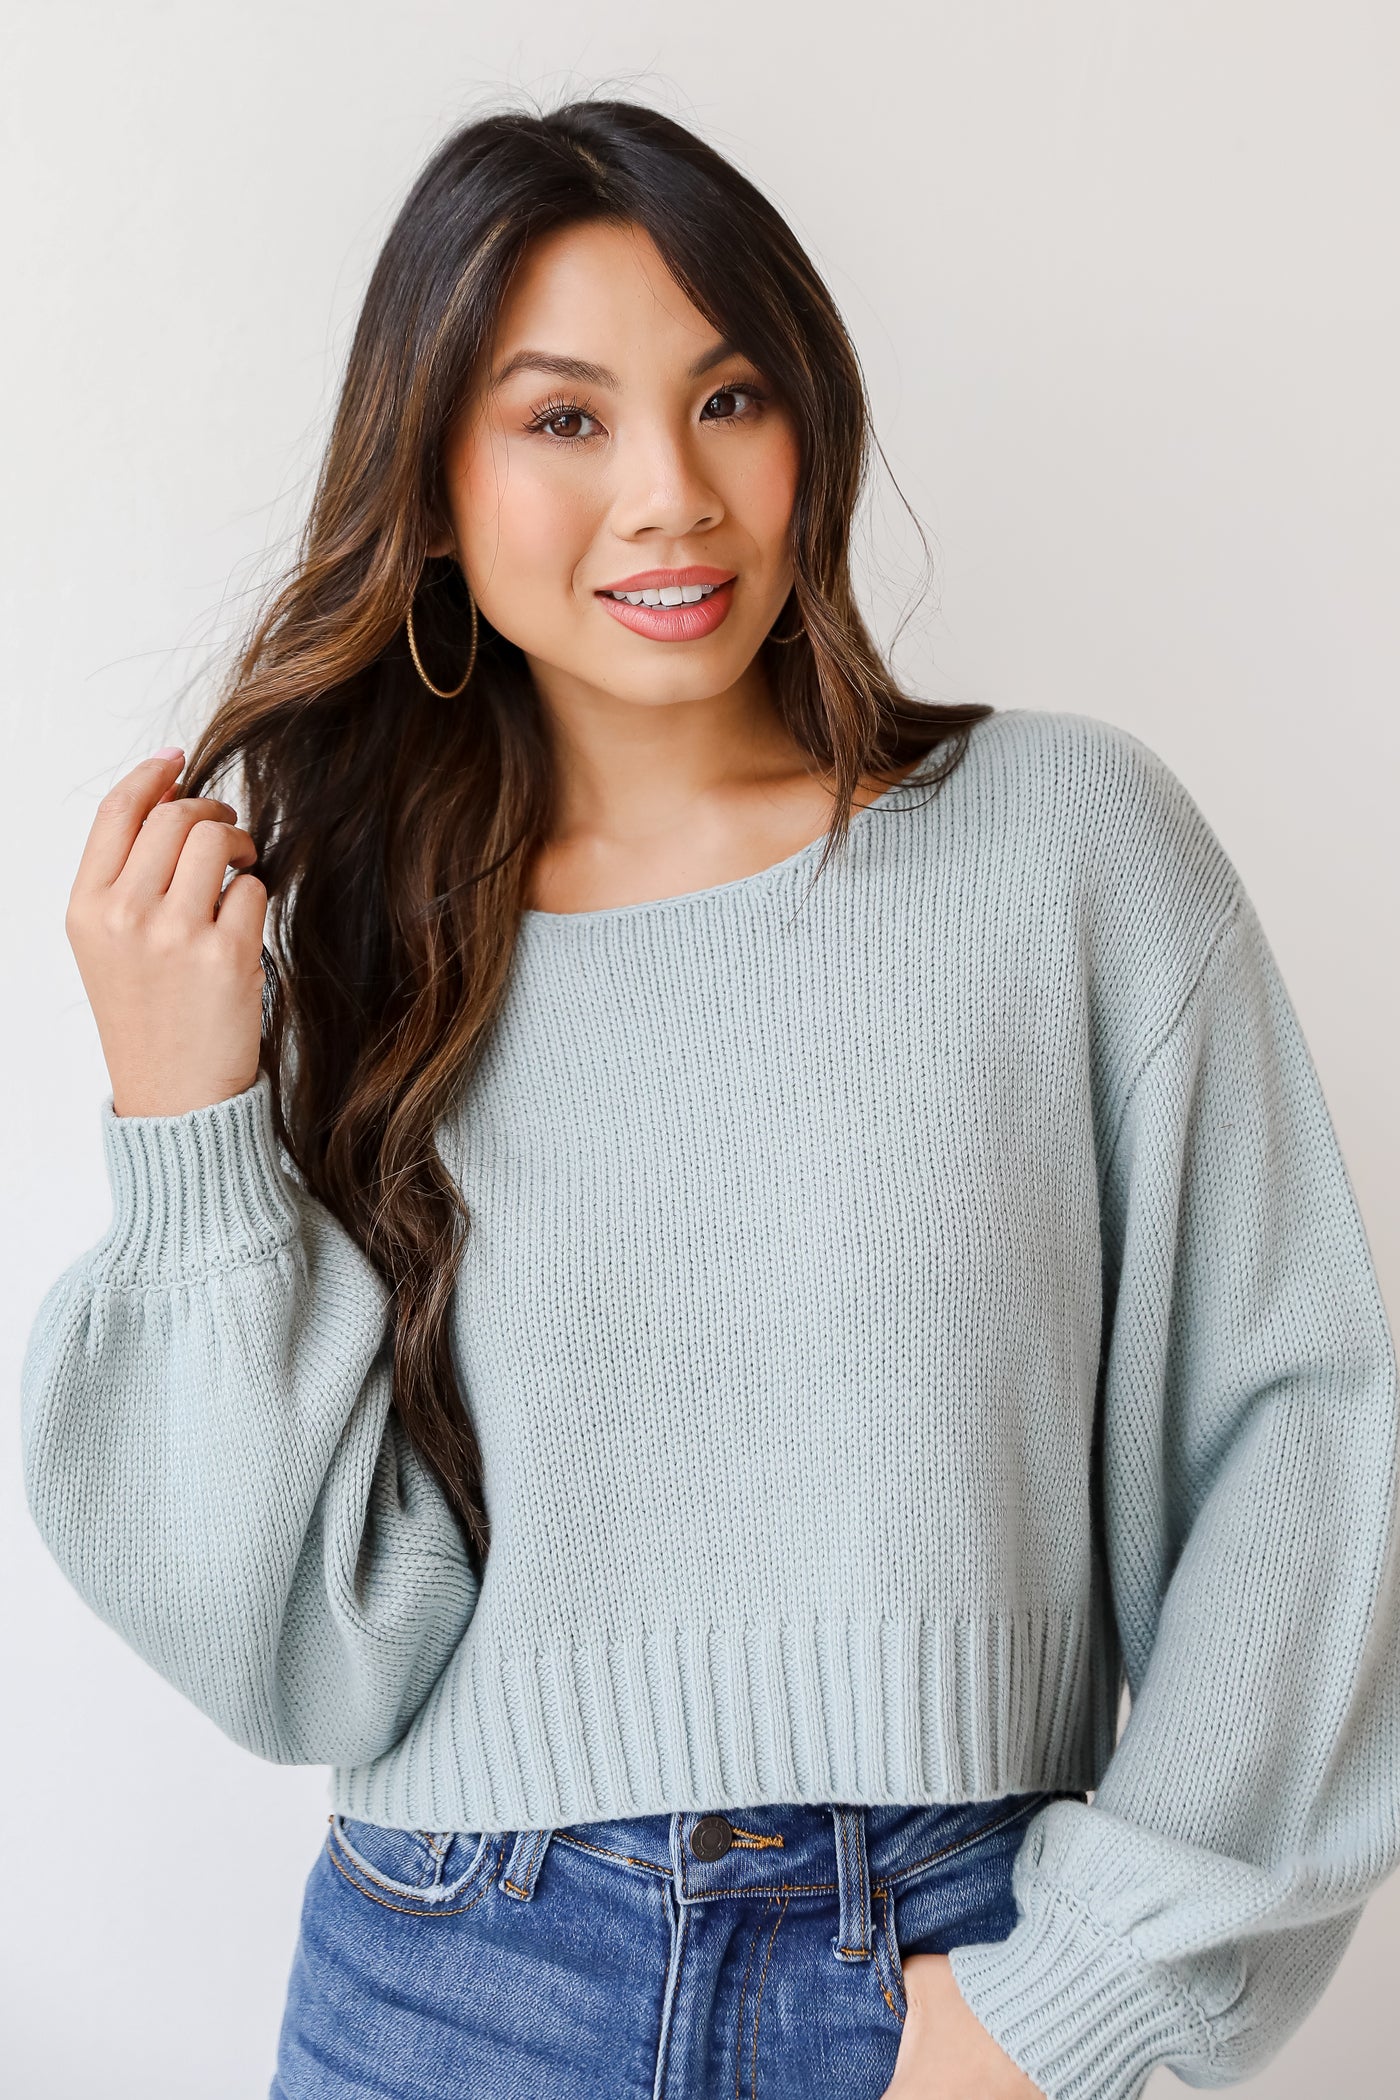 blue sweater on model